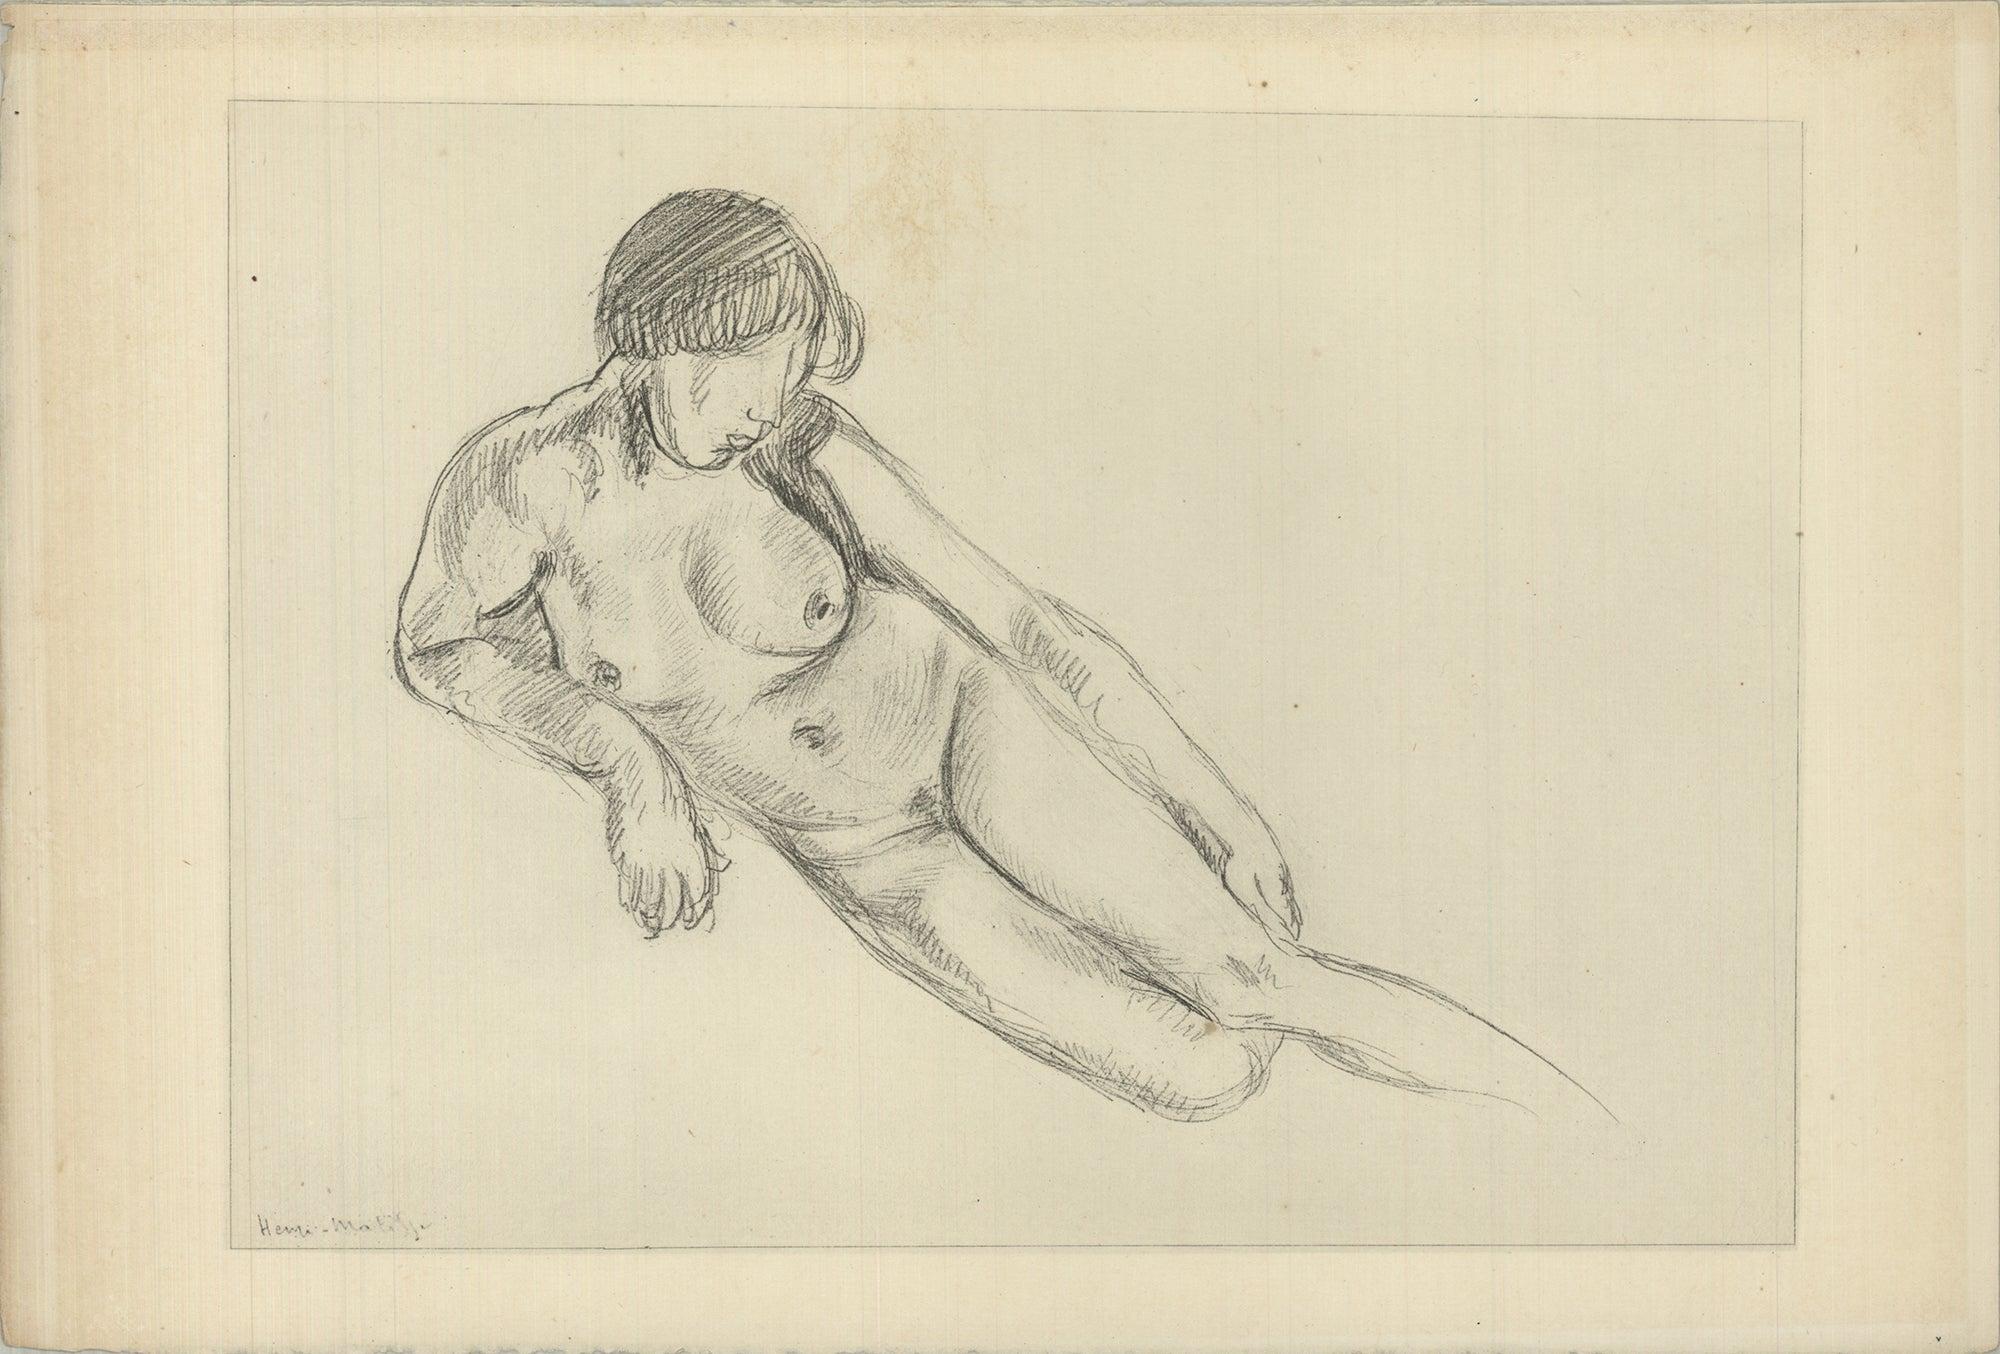 HENRI MATISSE Planche XLV, 1920 - Print by Henri Matisse